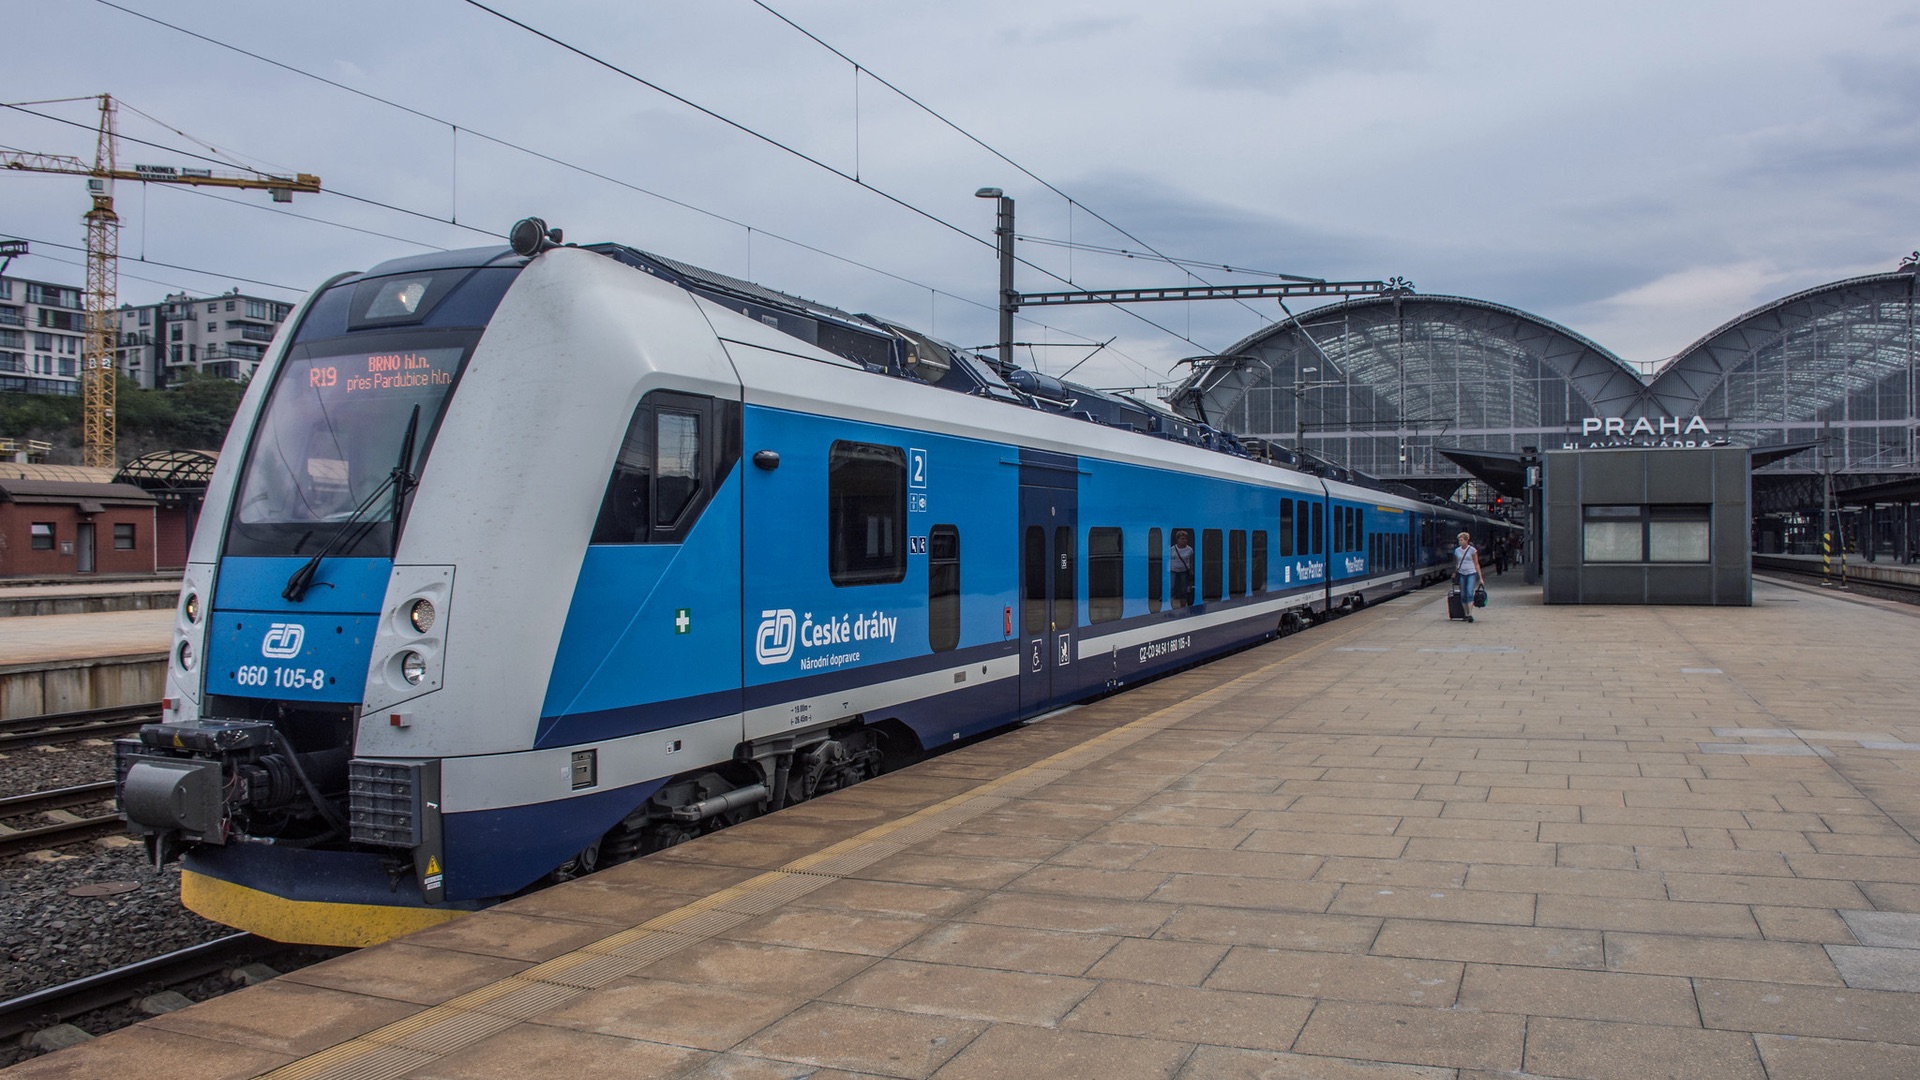 Dopo l’ammodernamento della linea da Praga a Brno, i treni circoleranno più lentamente su di essa